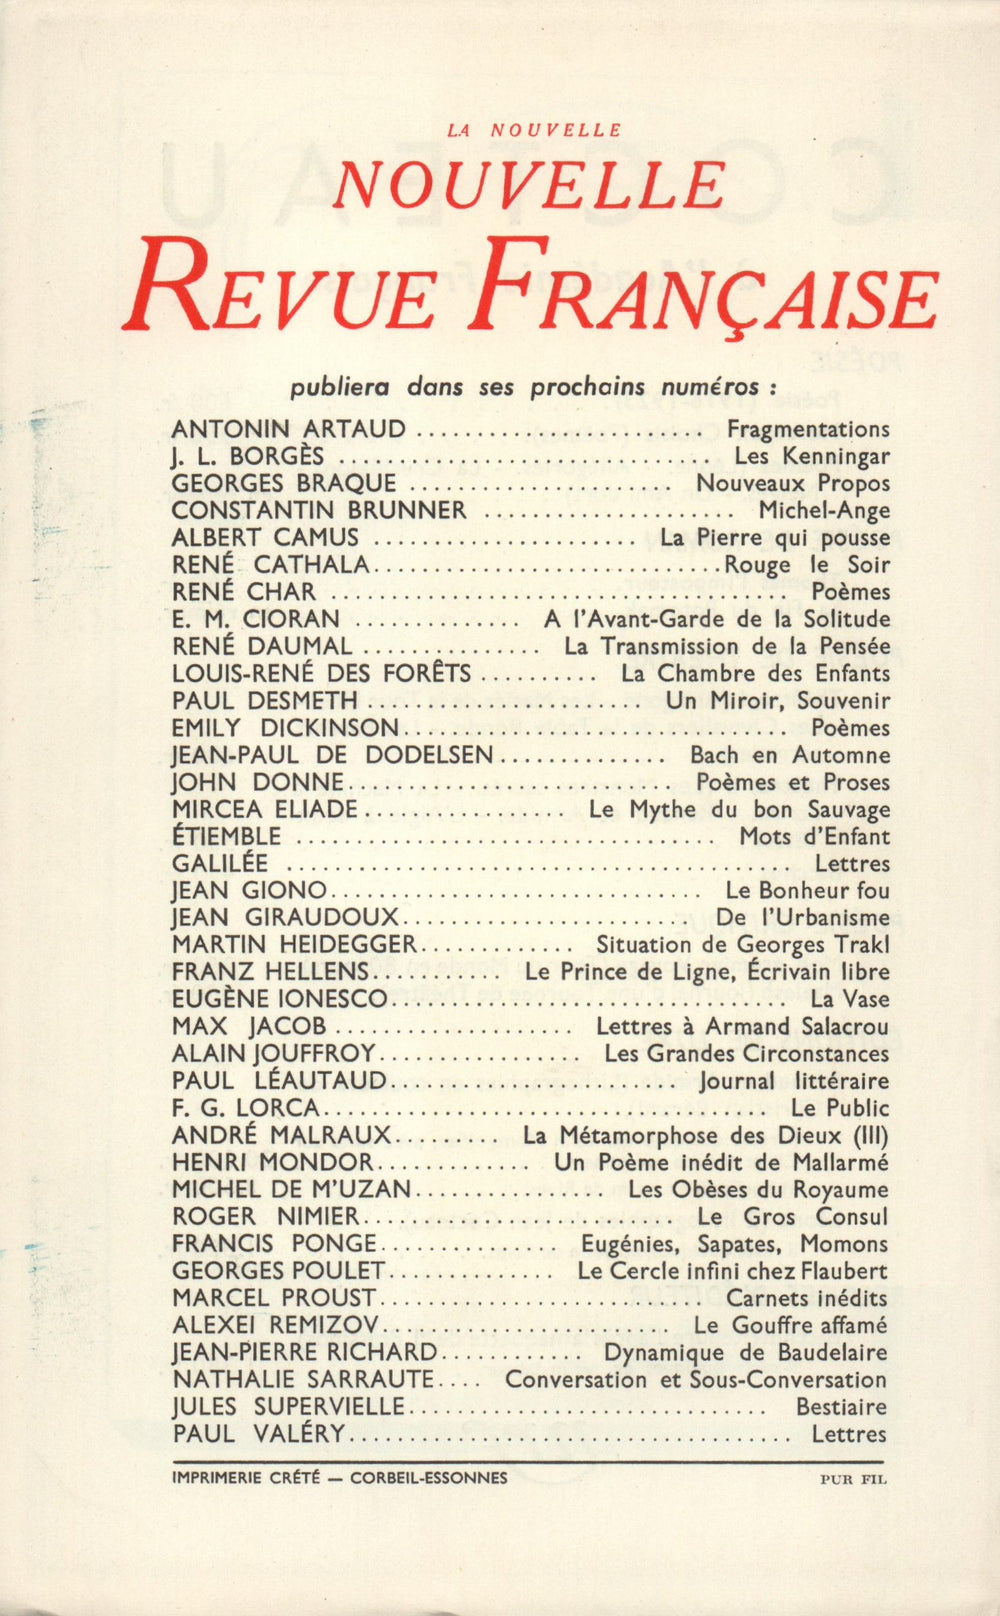 La Nouvelle Nouvelle Revue Française N' 28 (Avril 1955)